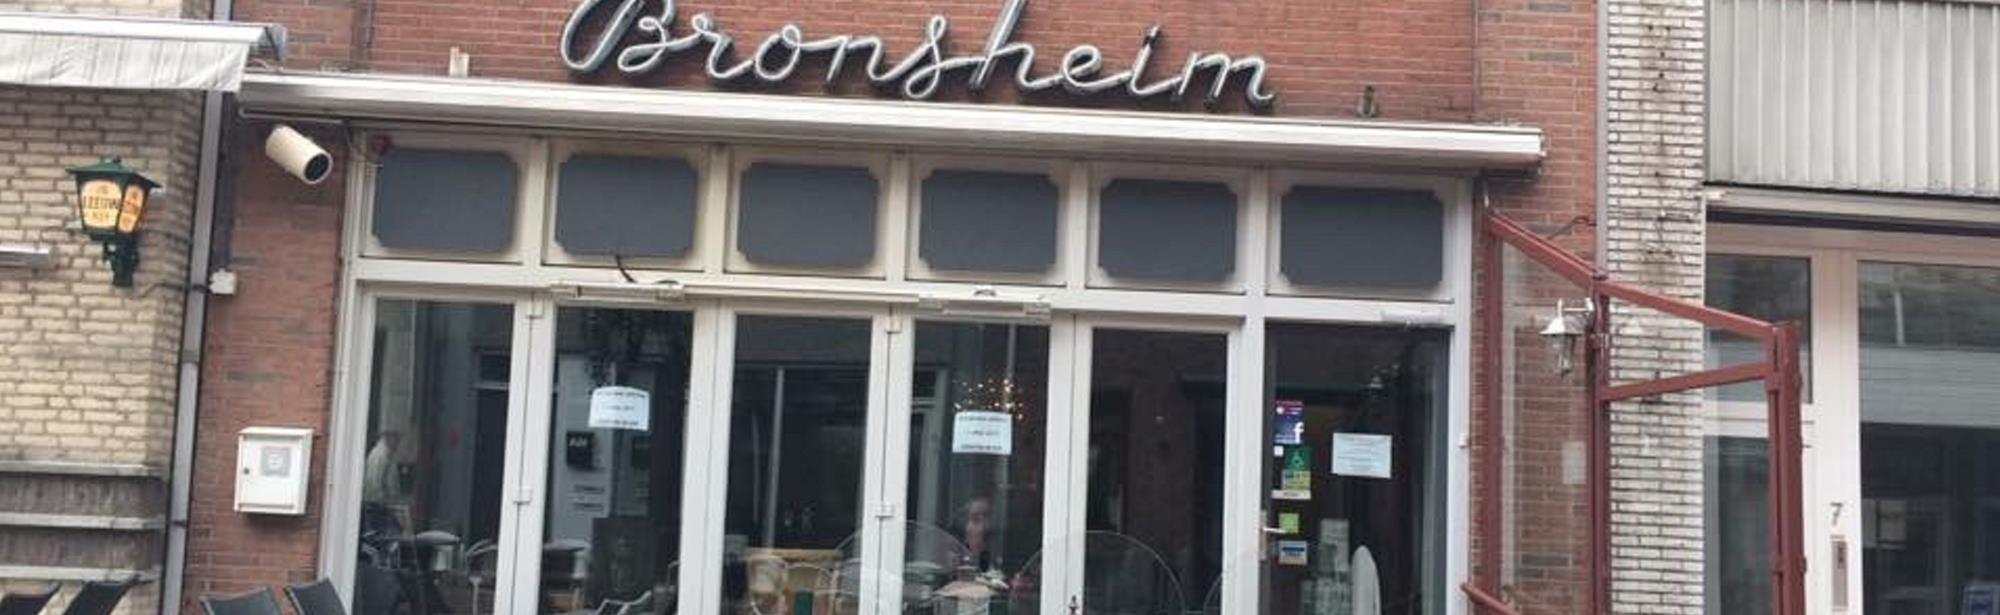 Brasserie-Restaurant Bronsheim